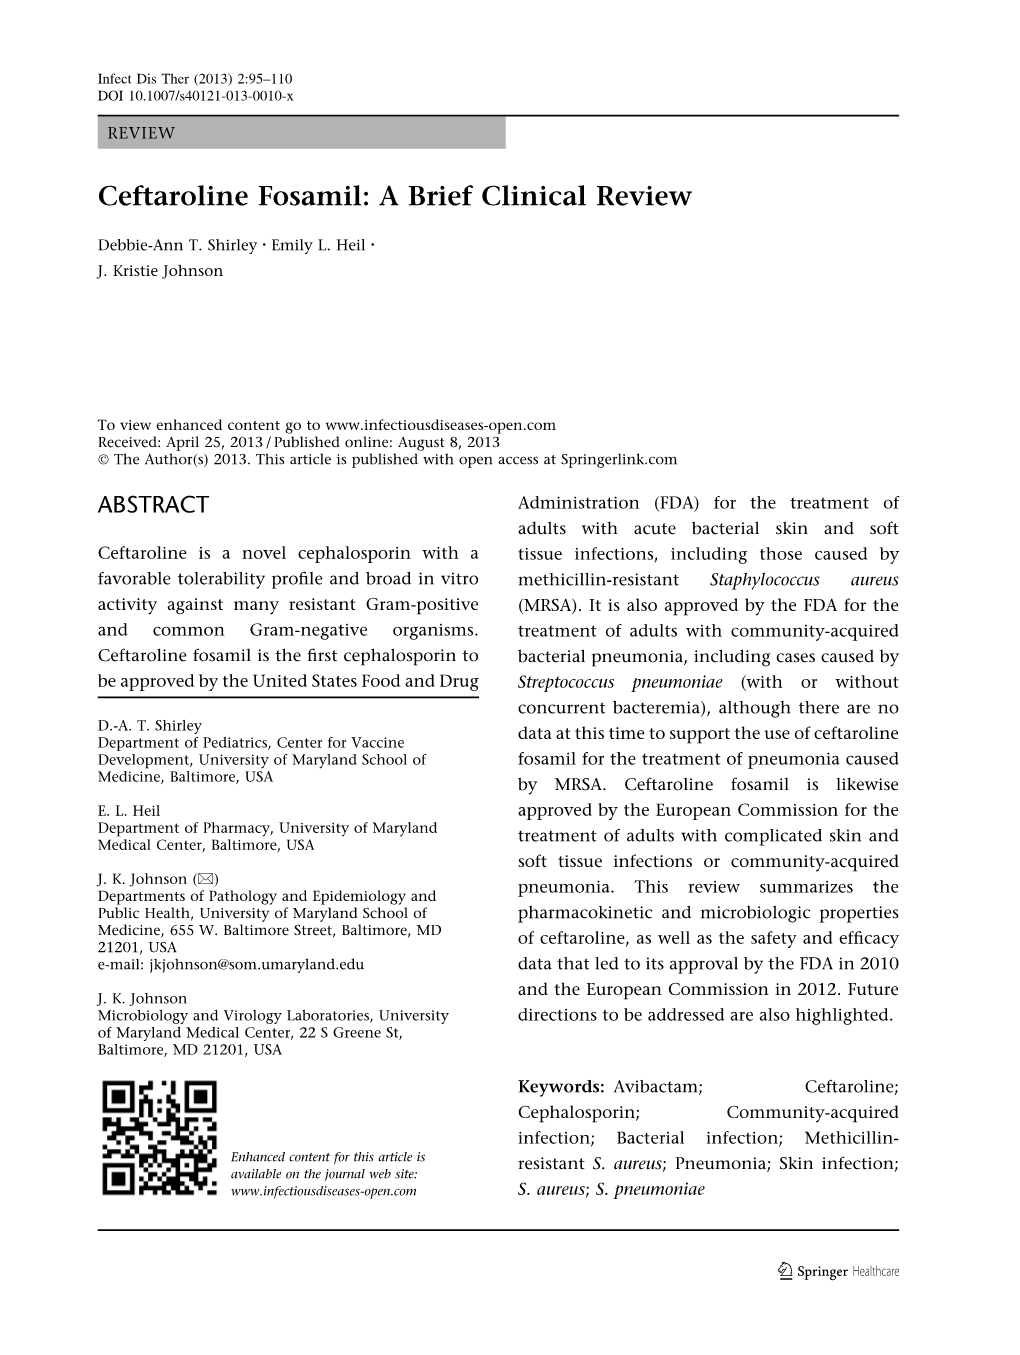 Ceftaroline Fosamil: a Brief Clinical Review